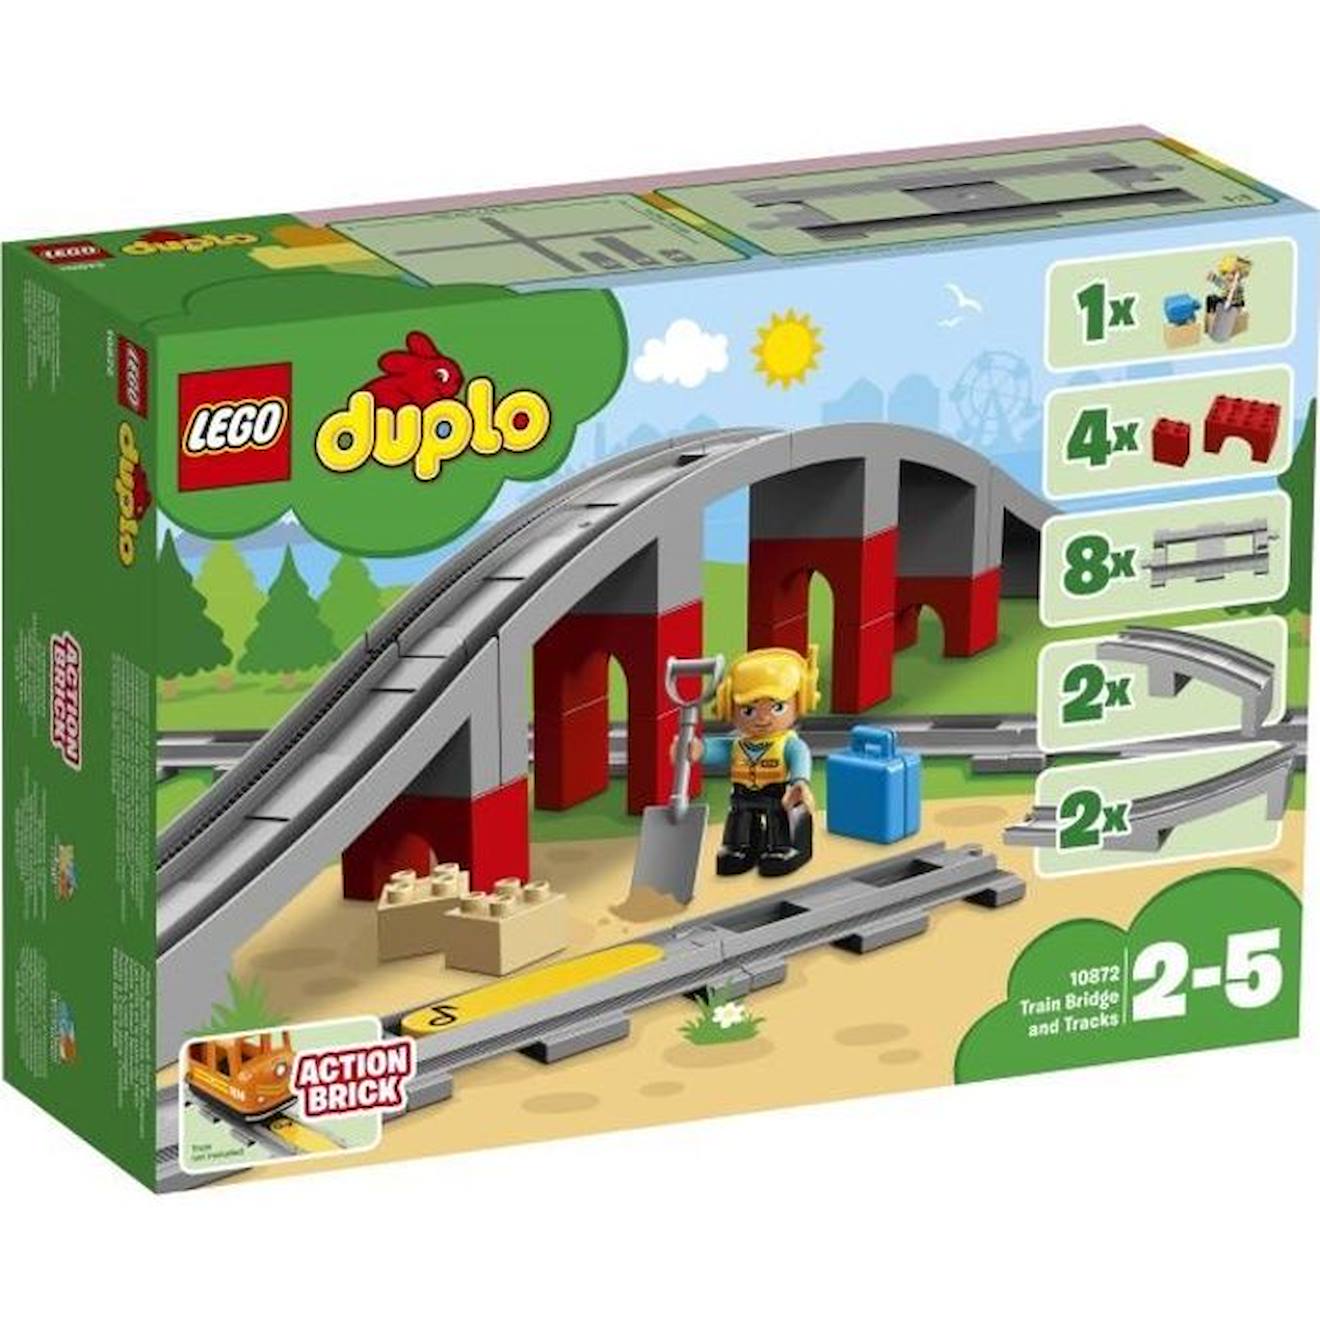 Lego® 10872 Duplo Town Les Rails Et Le Pont Du Train, Jouet Pour Enfants 2-5 Ans, Jeu De Constructio